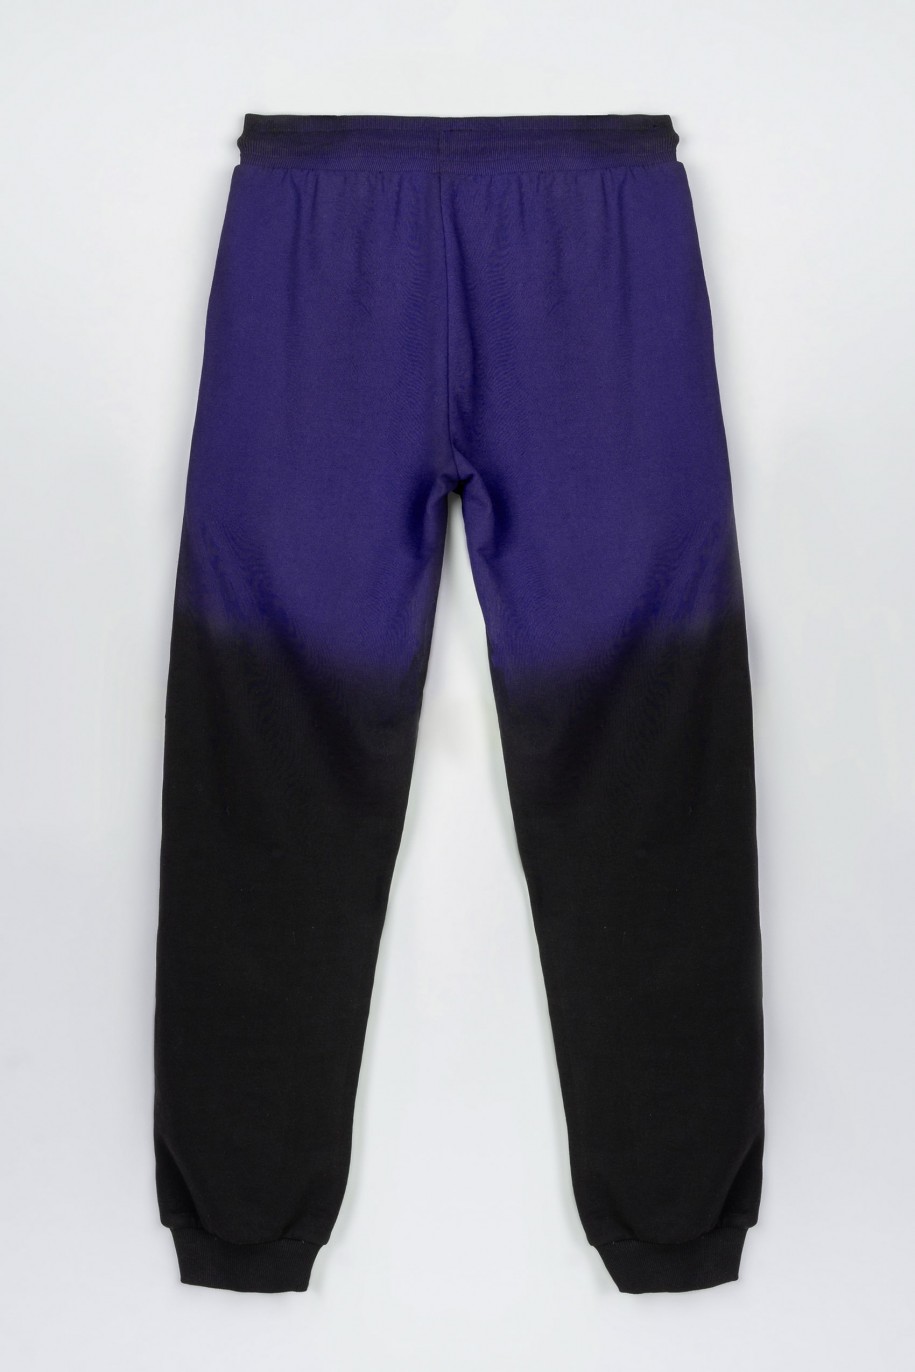 Granatowo-czarne spodnie dresowe z efektem ombre - 47604